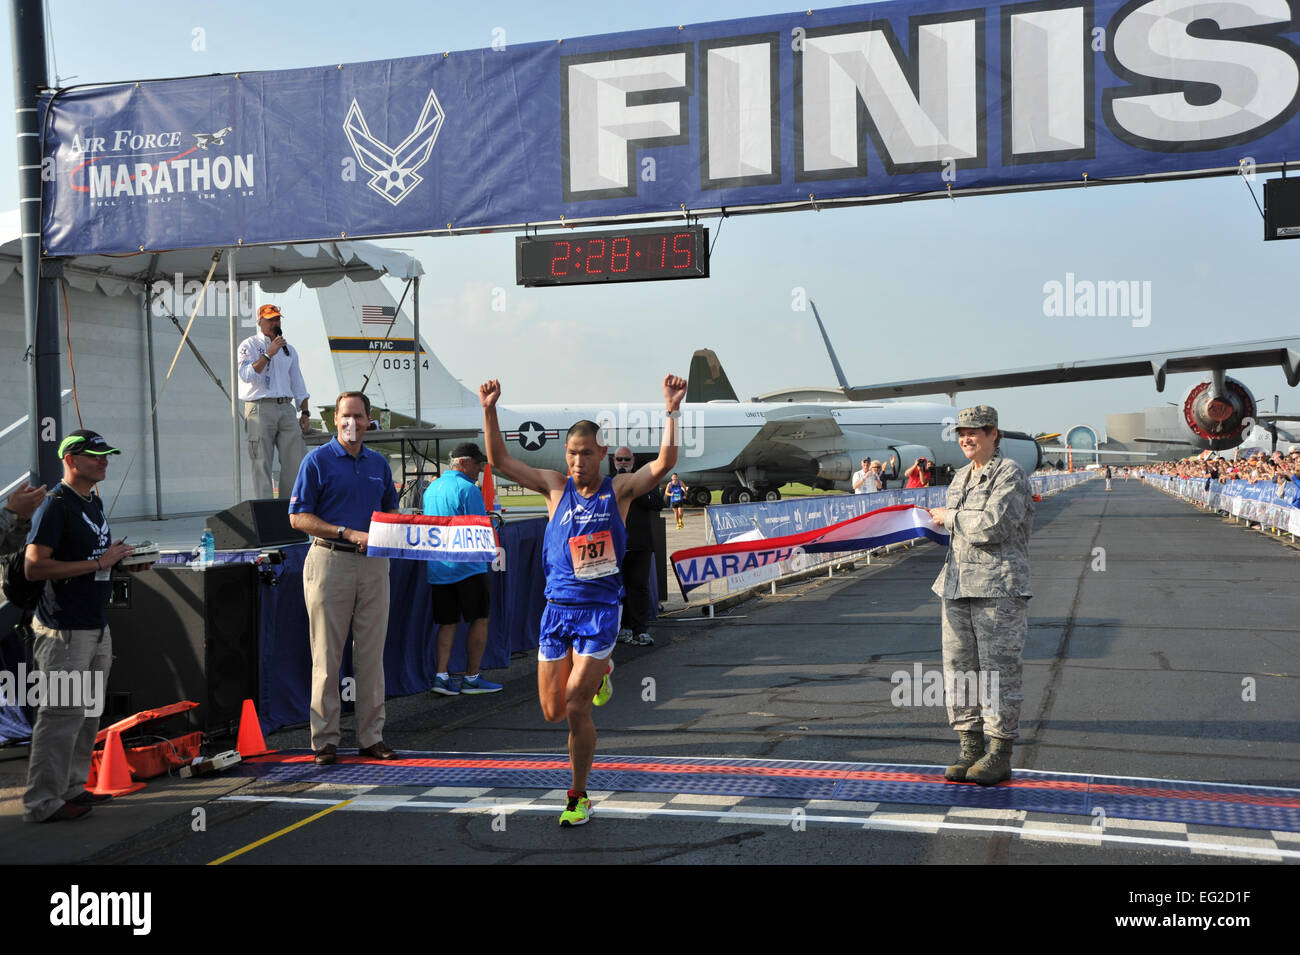 Steve Chu überquert die Ziellinie und wird 2014 US-Air Force Marathon Männer volle Marathon Champion 20. September 2014, an Wright-Patterson Air Force Base in Ohio.  Mike Libecap Stockfoto